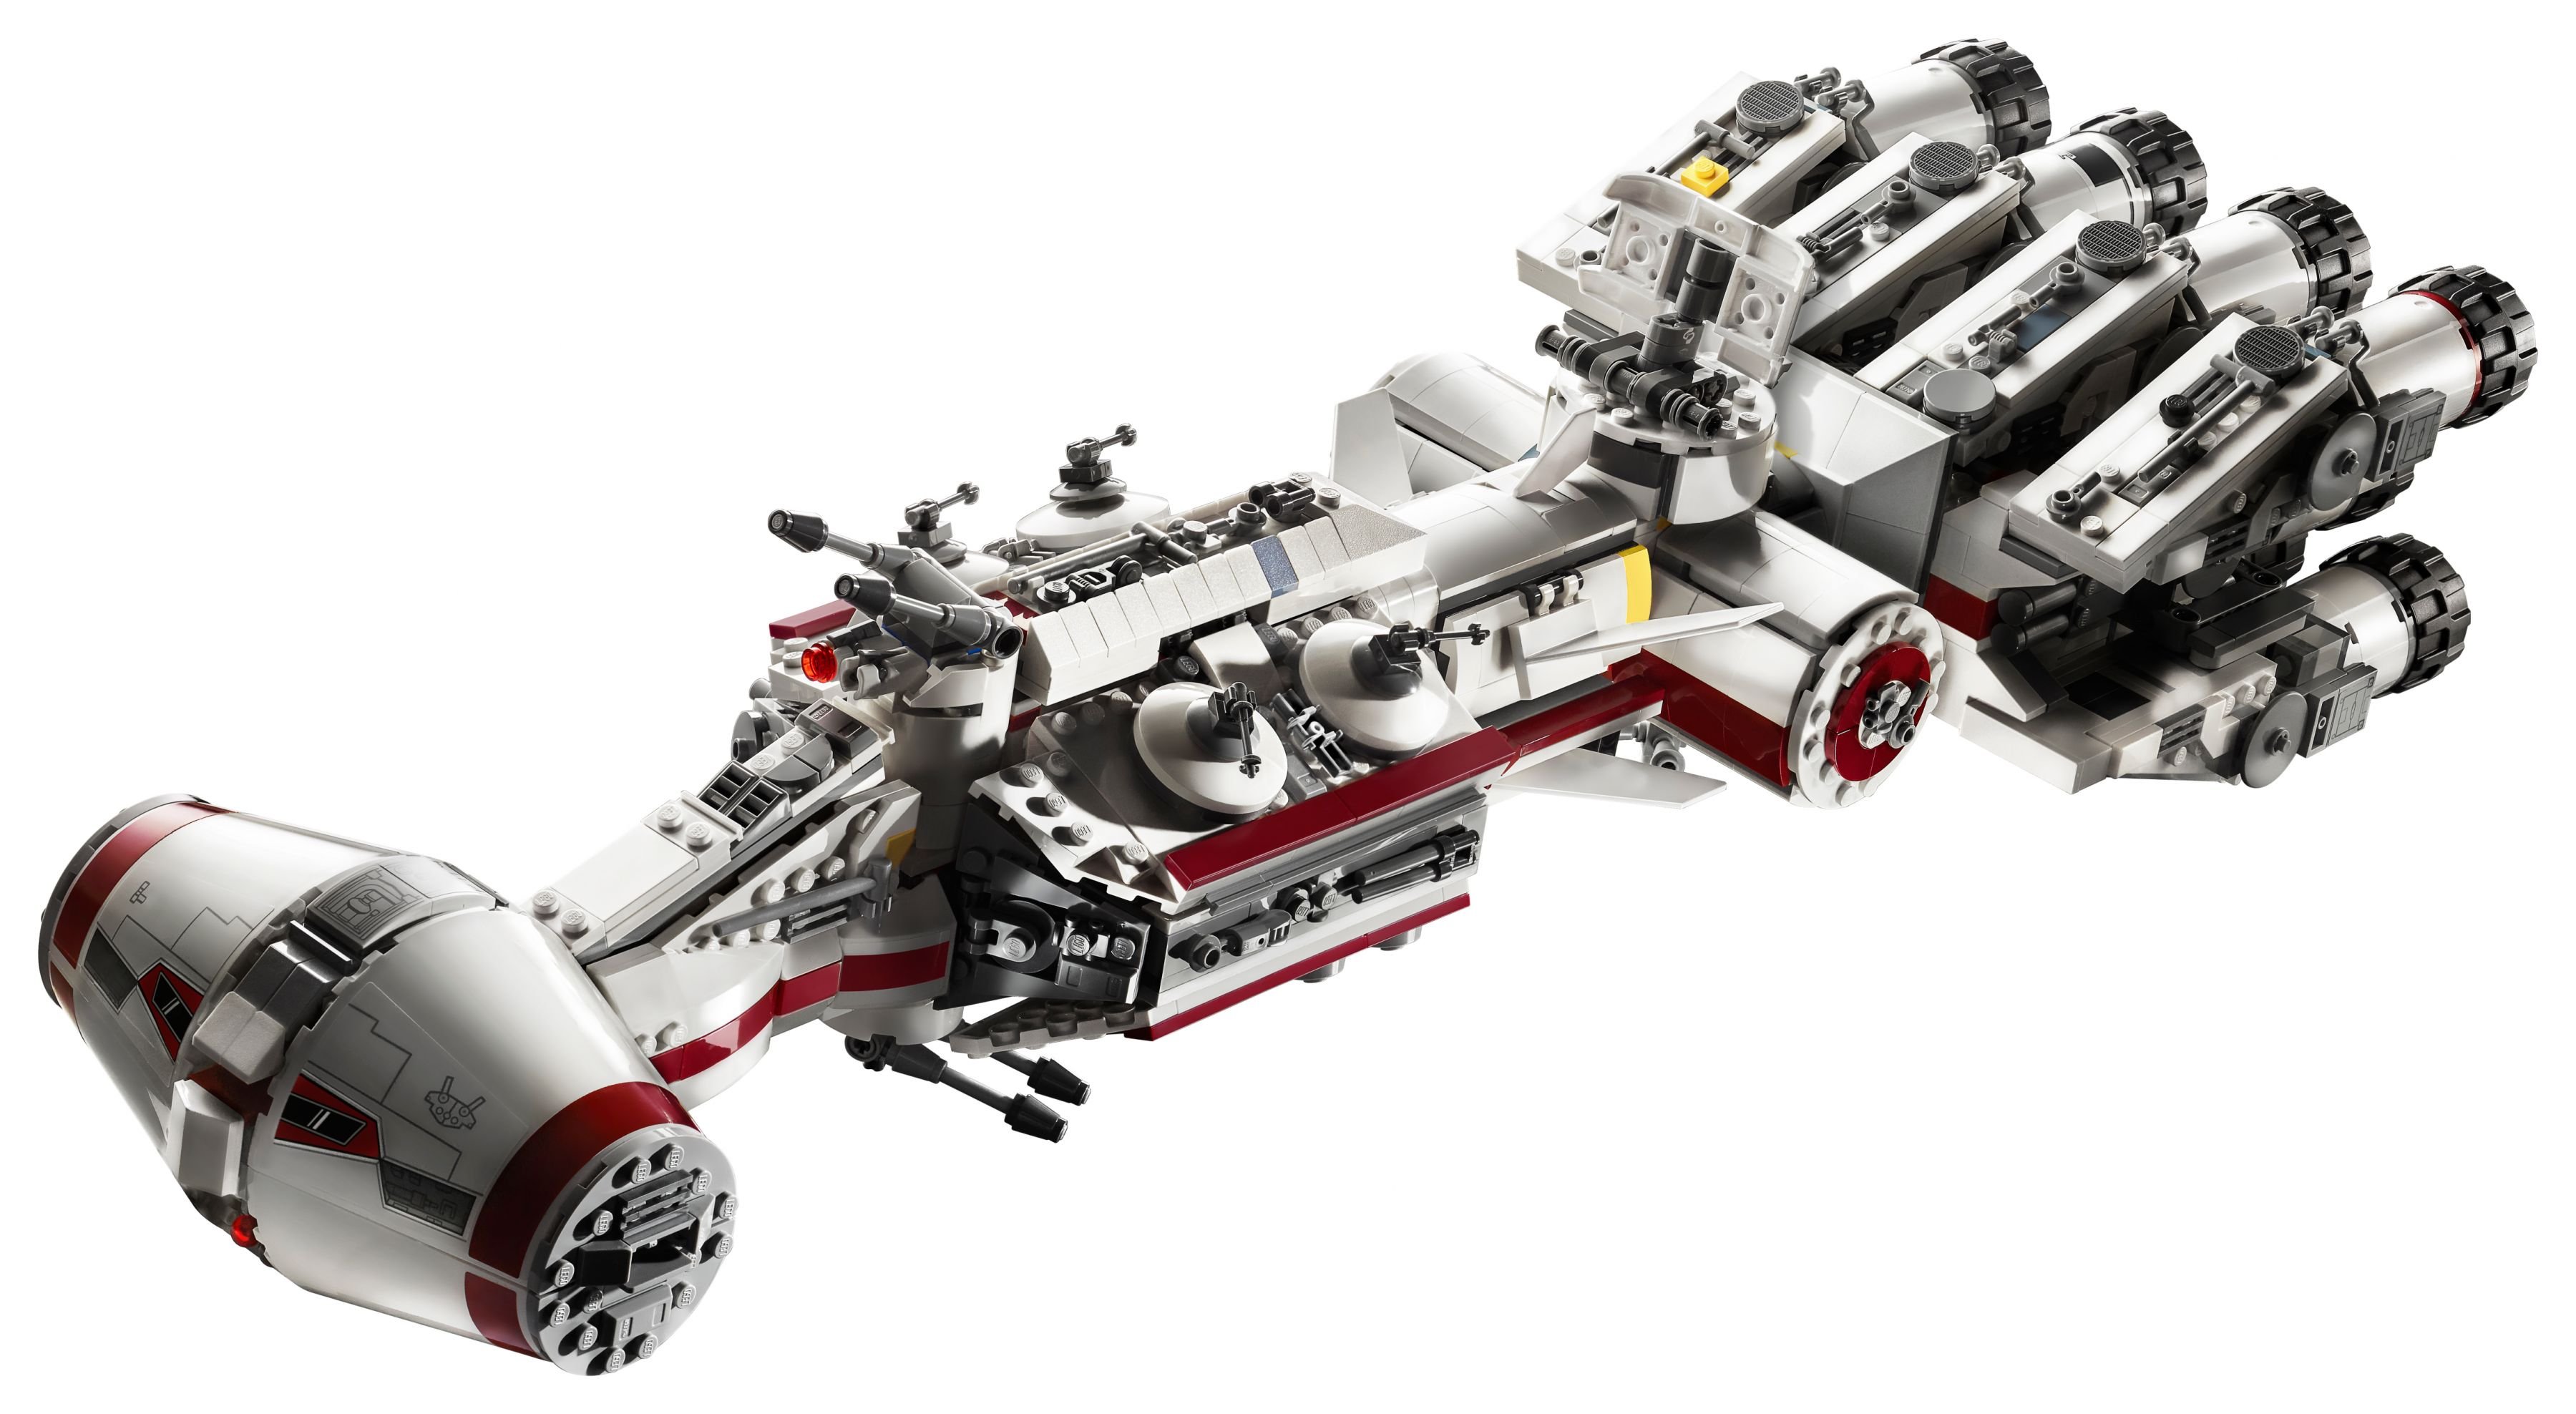 LEGO Star Wars 75244 Tantive IV LEGO_75244_alt2.jpg